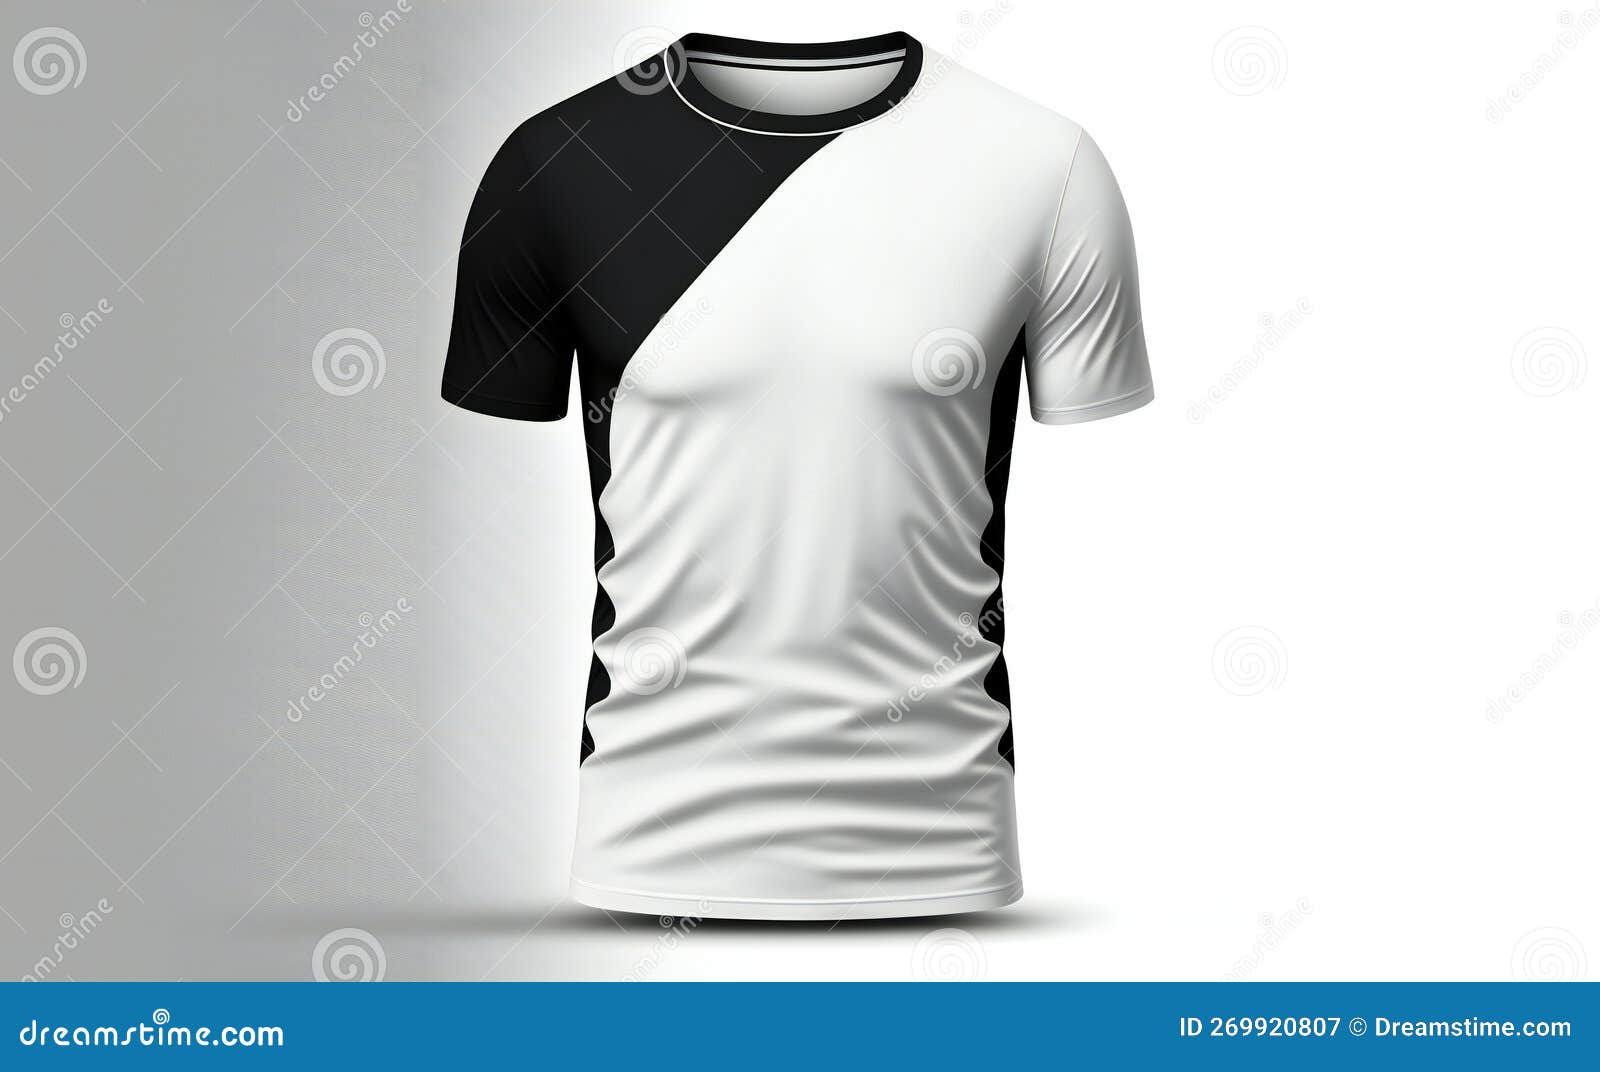 Camisetas Blancas Y Negras Con Ropa Y Accesorios De Manga Corta Stock de  ilustración - Ilustración de frente, accesorios: 269920807